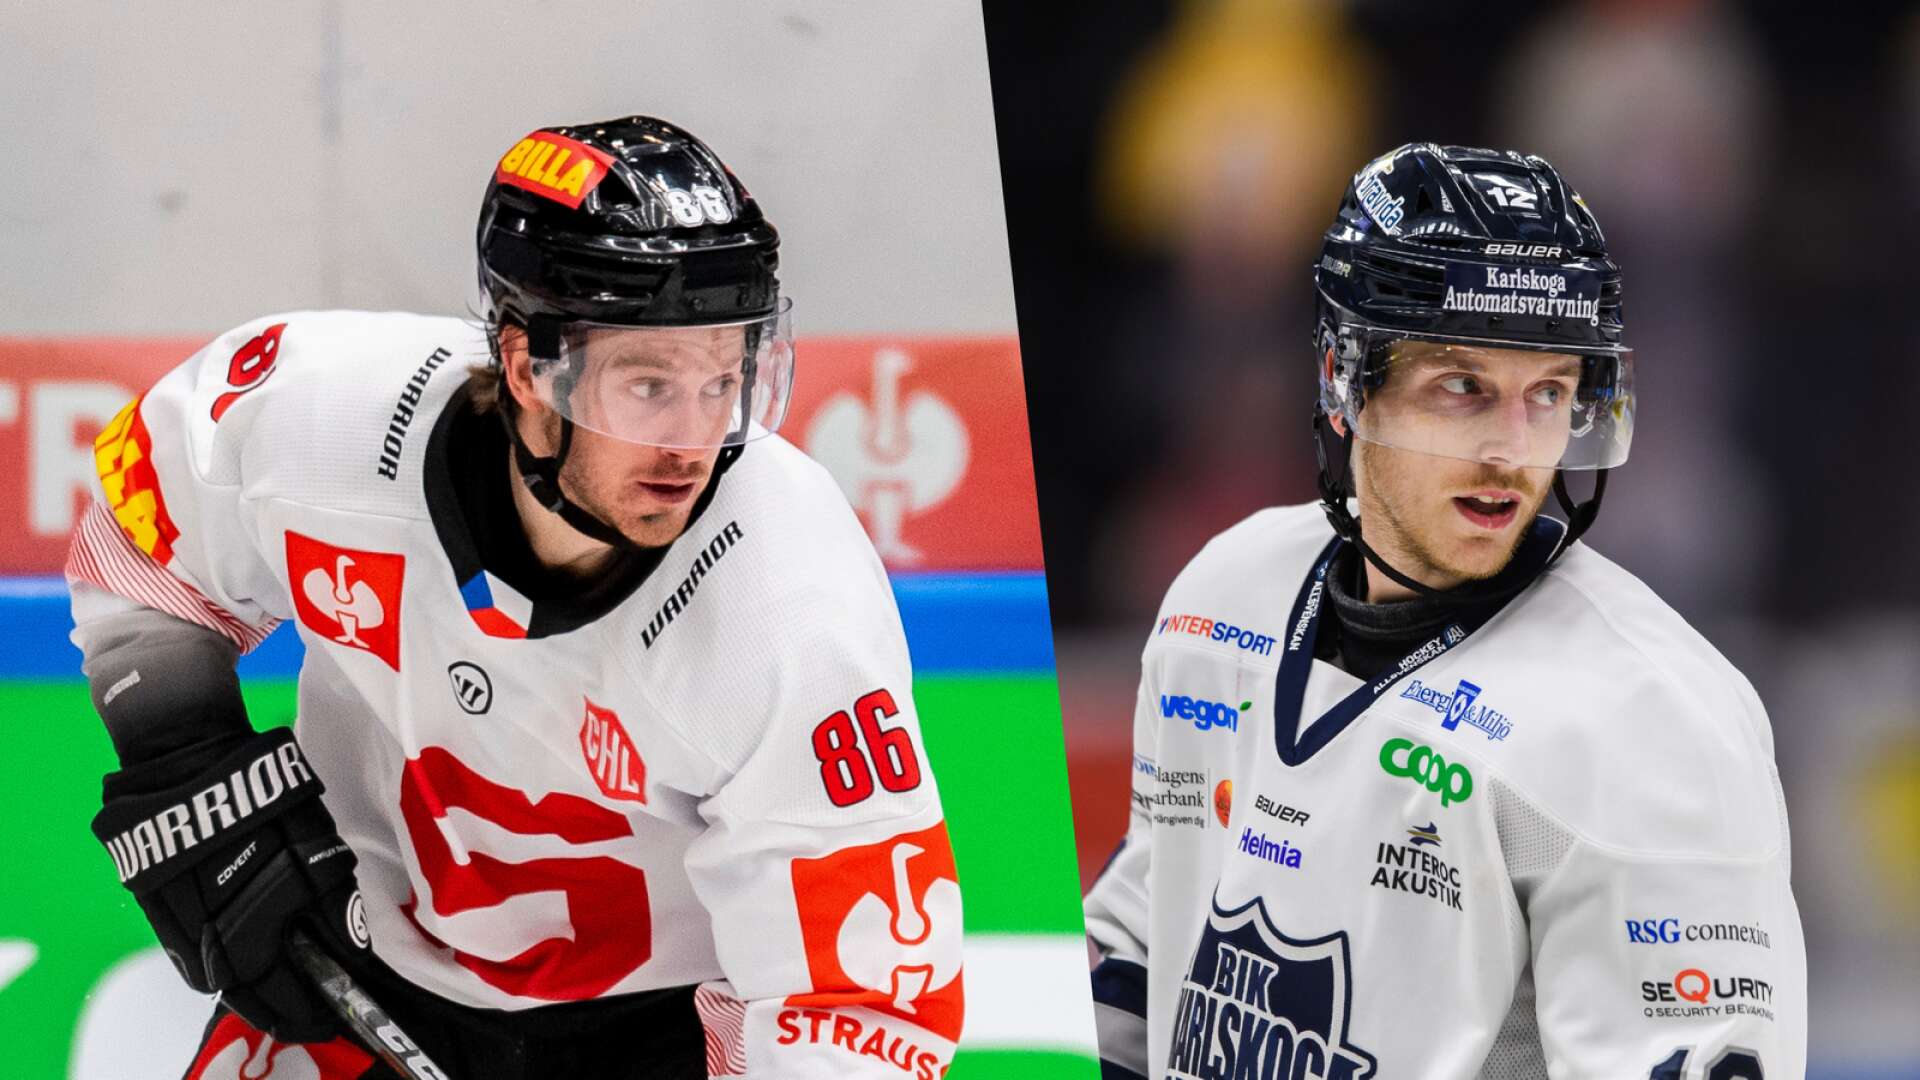 Erik och Gustaf Thorell får chansen att spela tillsammans, enligt VF-sportens uppgifter. 